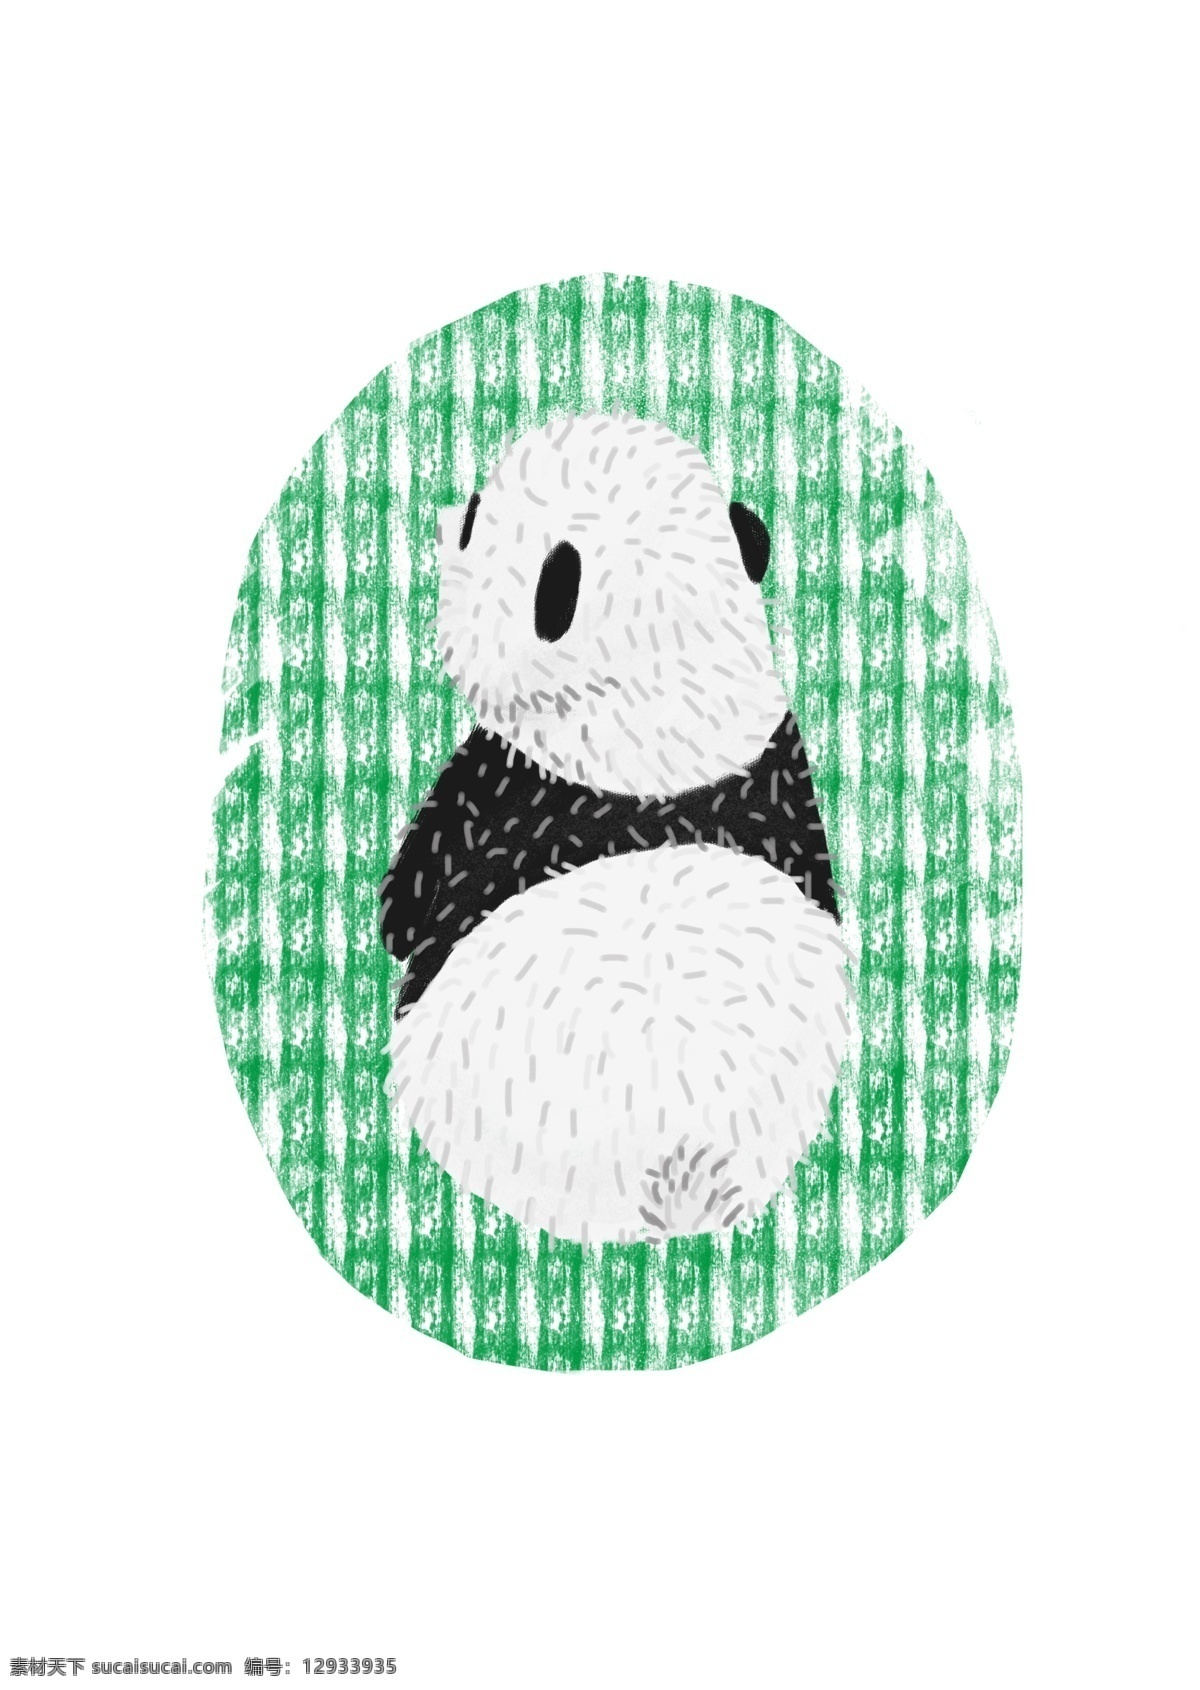 成都 可爱 大熊猫 图章 风格 背影 绿色 图标 卡通 动物 熊猫 国宝 简约风格 黑白 胖胖